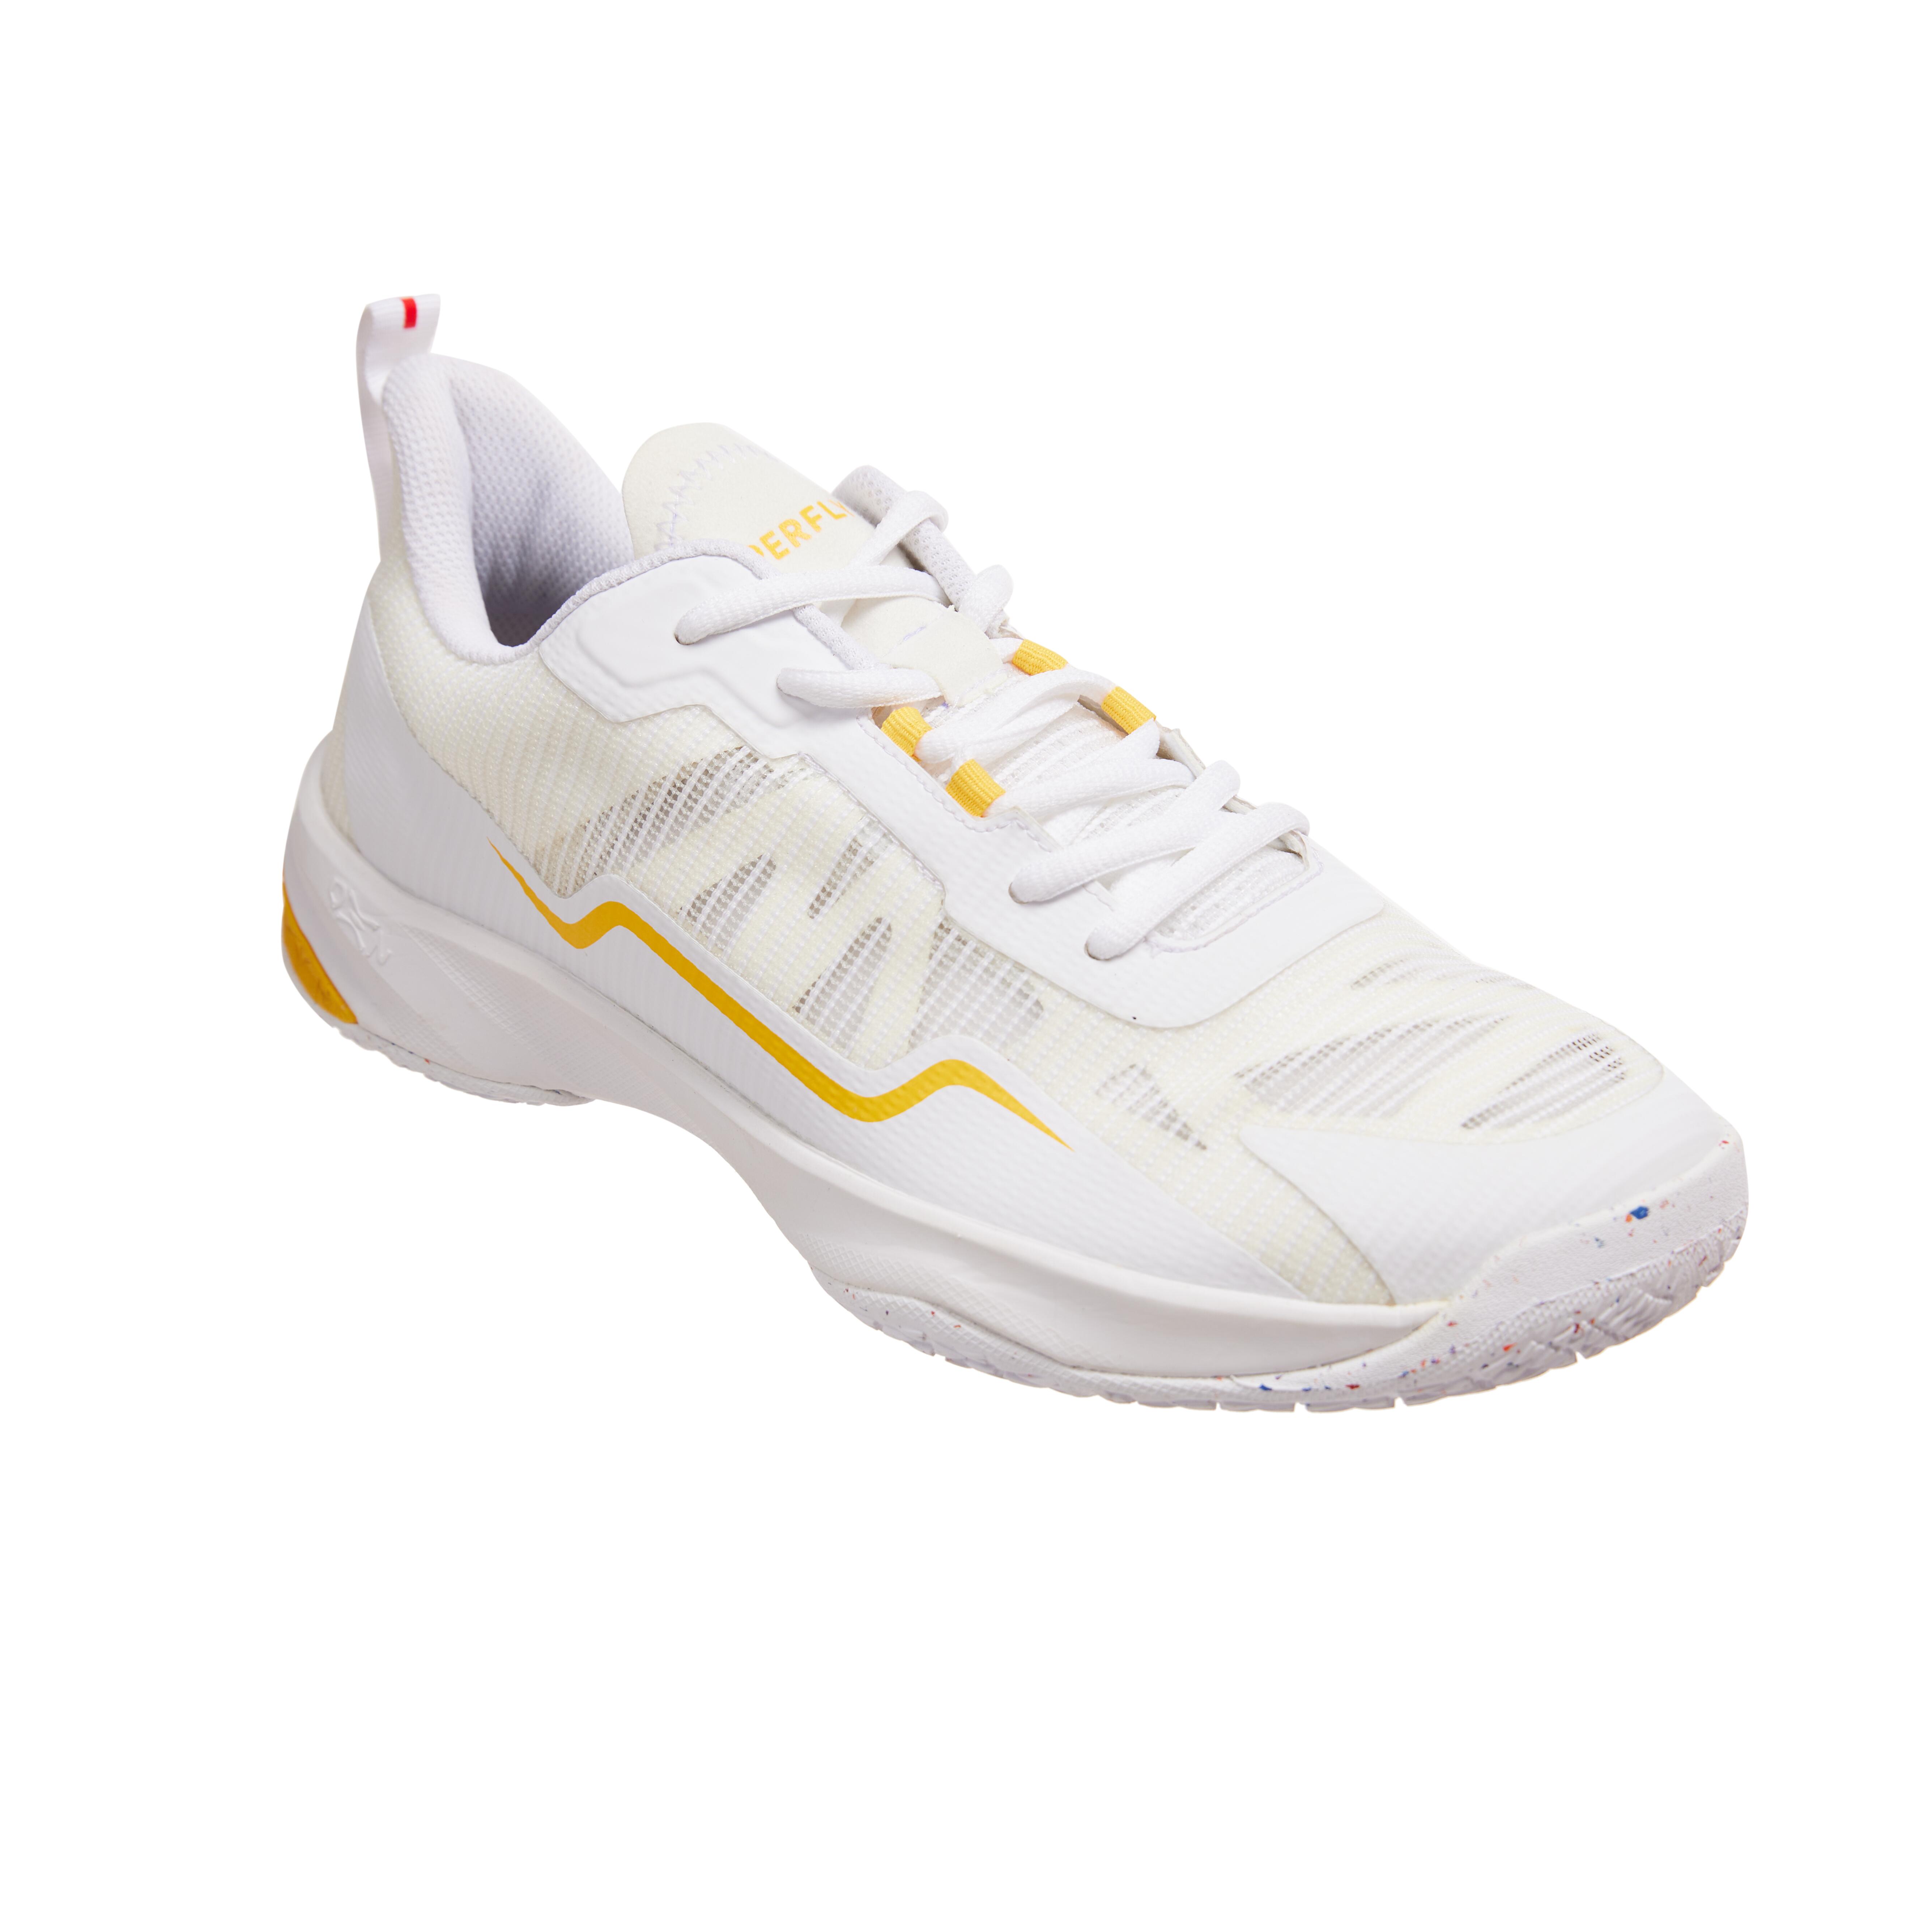 Image of Men’s Badminton Shoes - BS 560 Lite